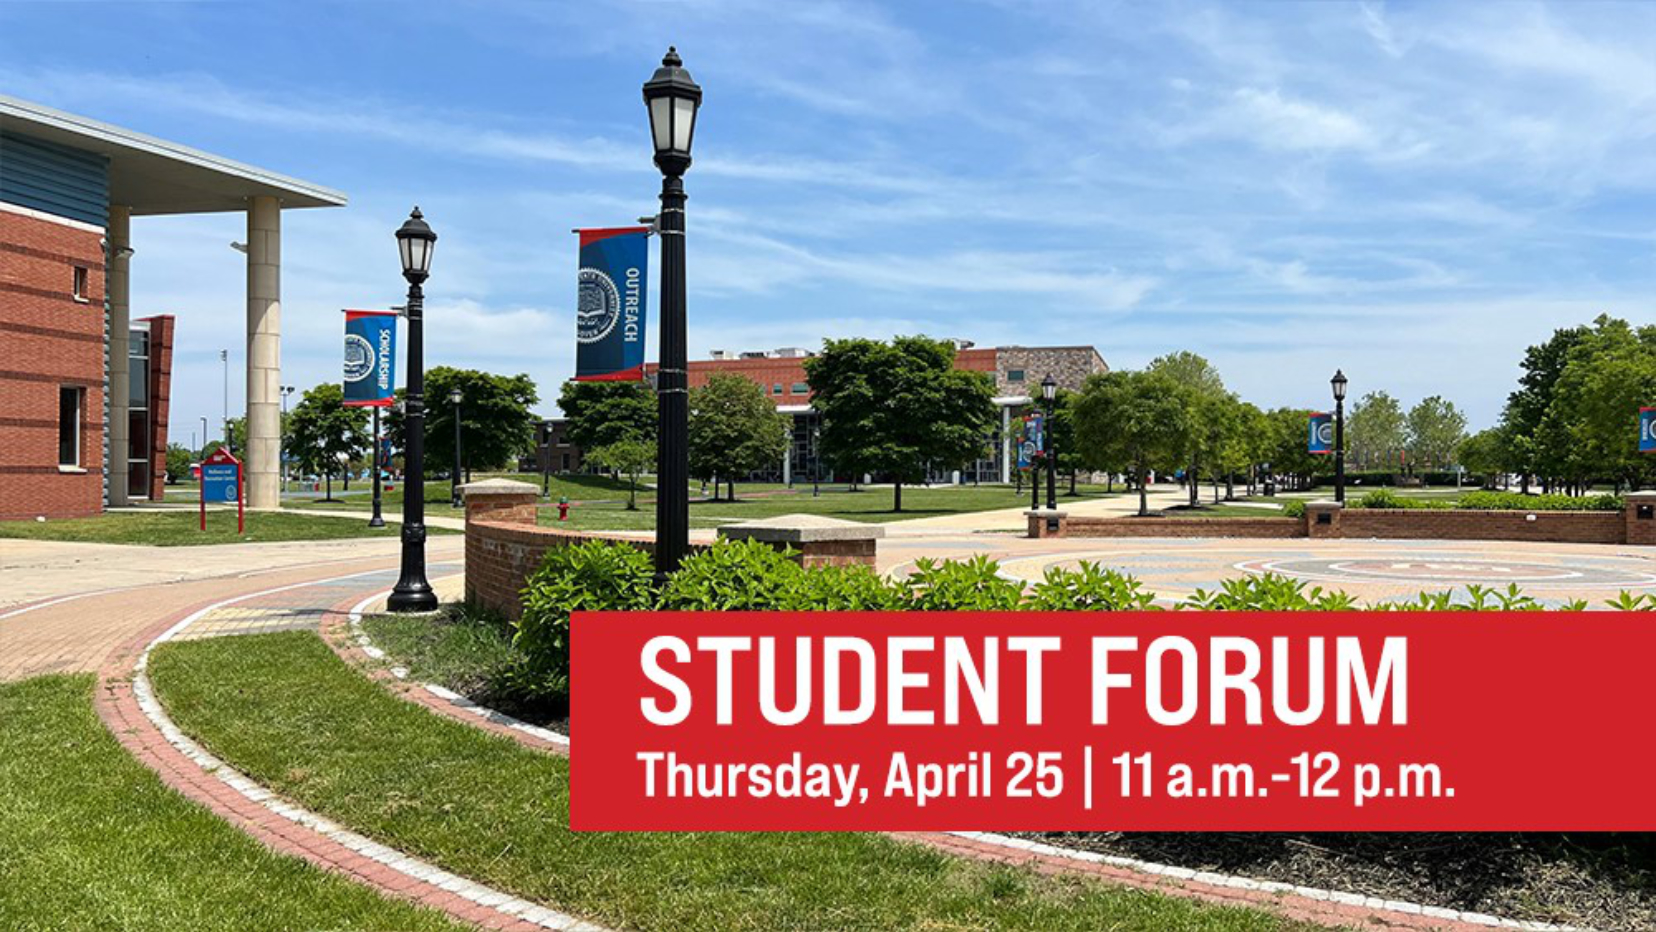 Student Forum - Thursday, April 25